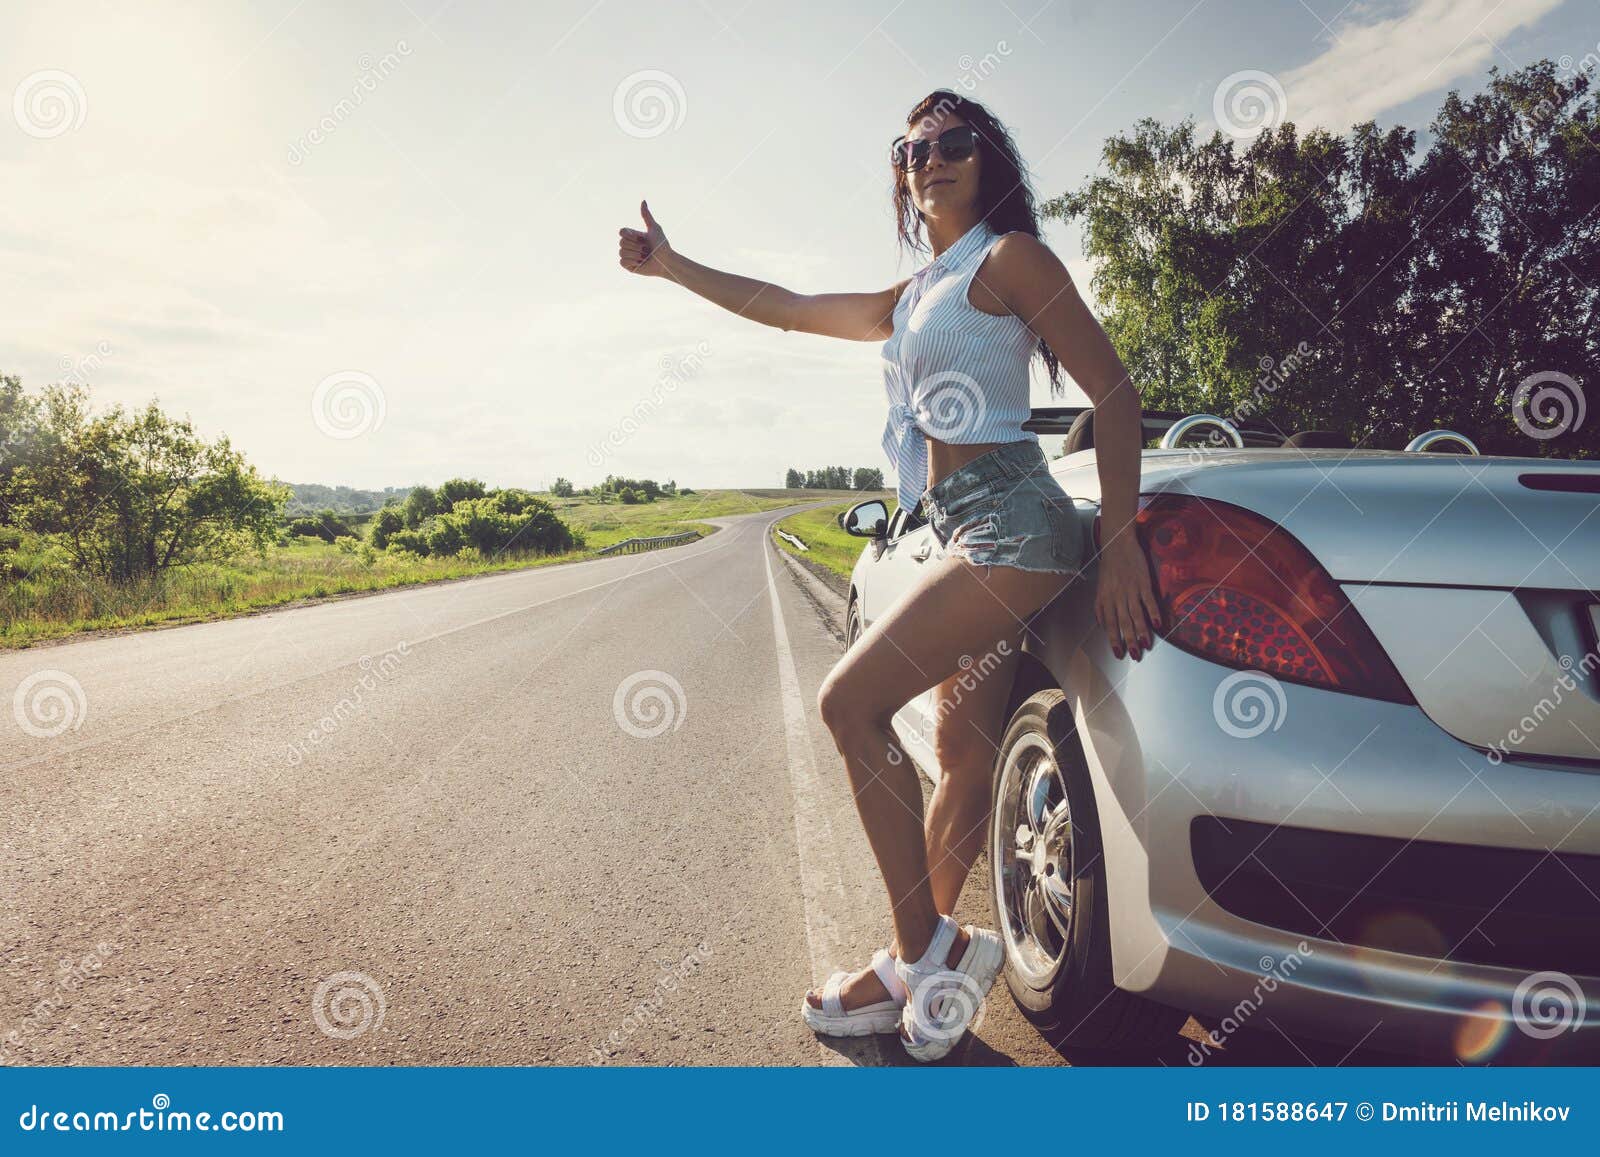 hot teen hitchhiker falls